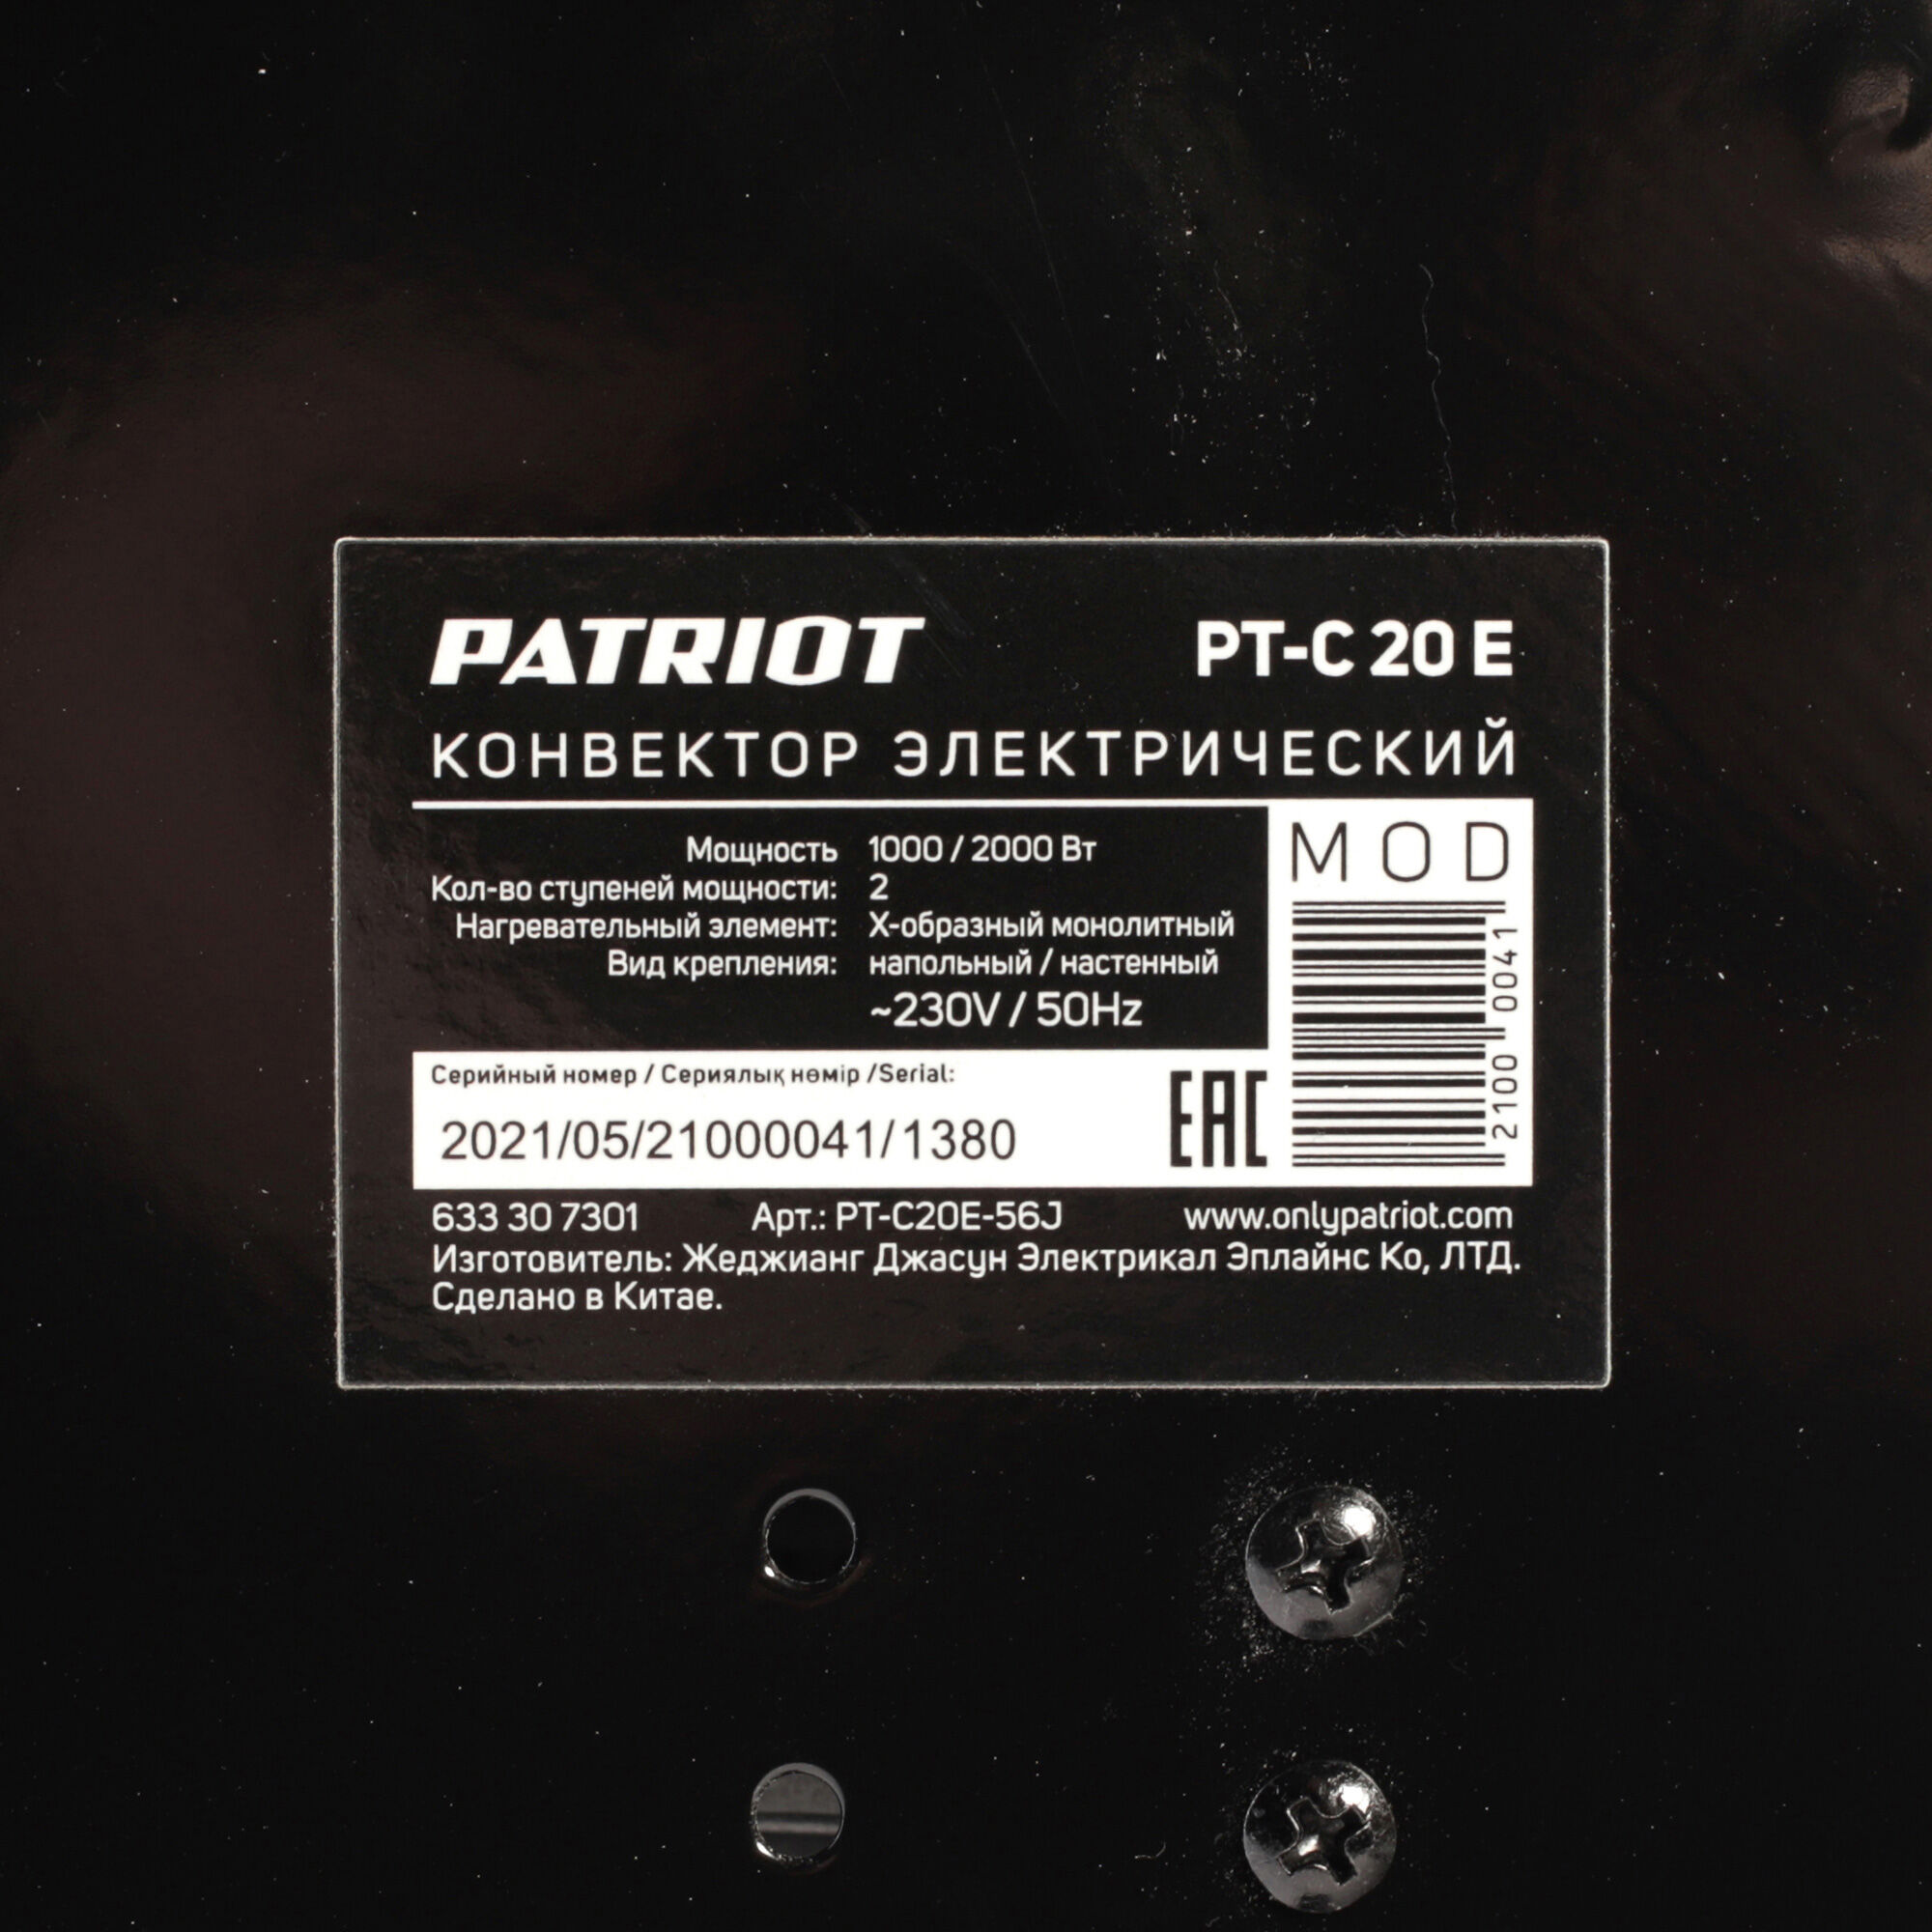 Конвектор электрический Patriot PT-C 20 E, 1000/2000 Вт., эл. термостат, Х-образный монолитный нагревательный элемент 4